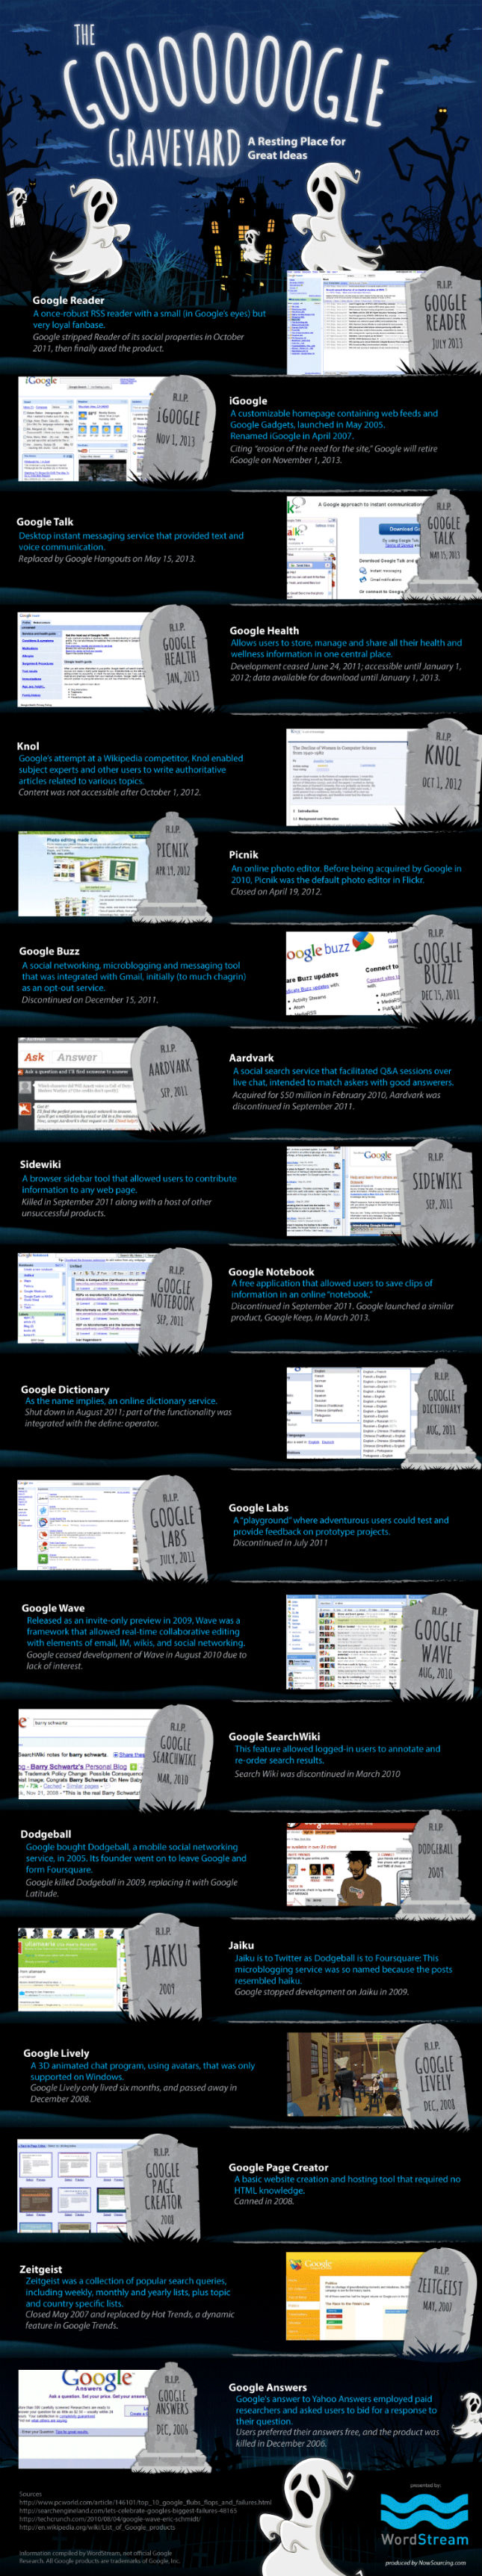 Инфографика: список всех "мертвых" сервисов компании Google